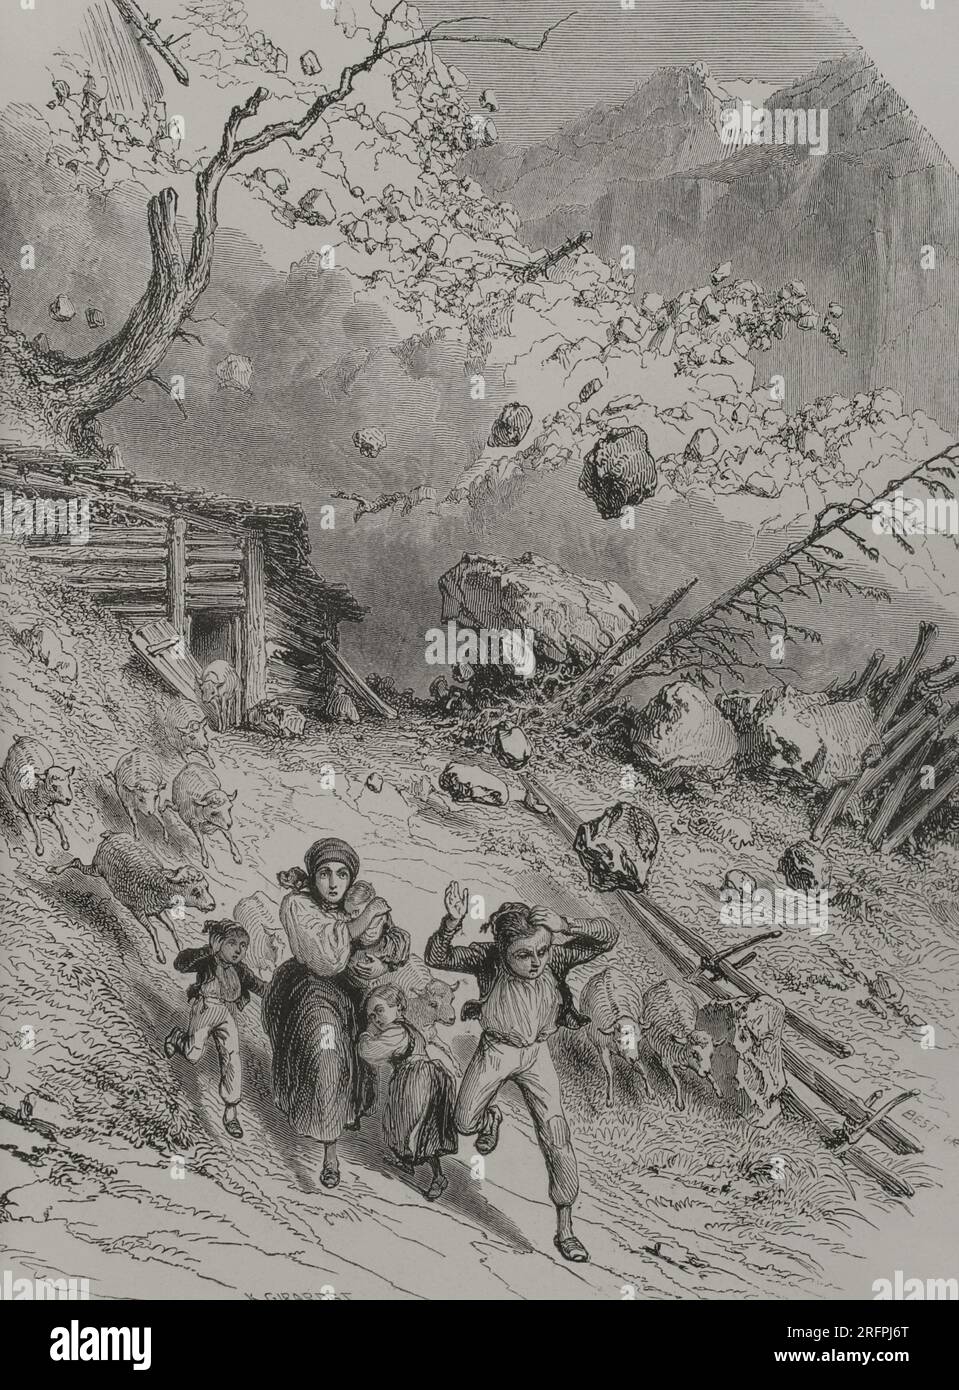 An avalanche in the Alps. Engraving by K. Girardet. 'Los Héroes y las Grandezas de la Tierra'. Volume V. 1855. Stock Photo